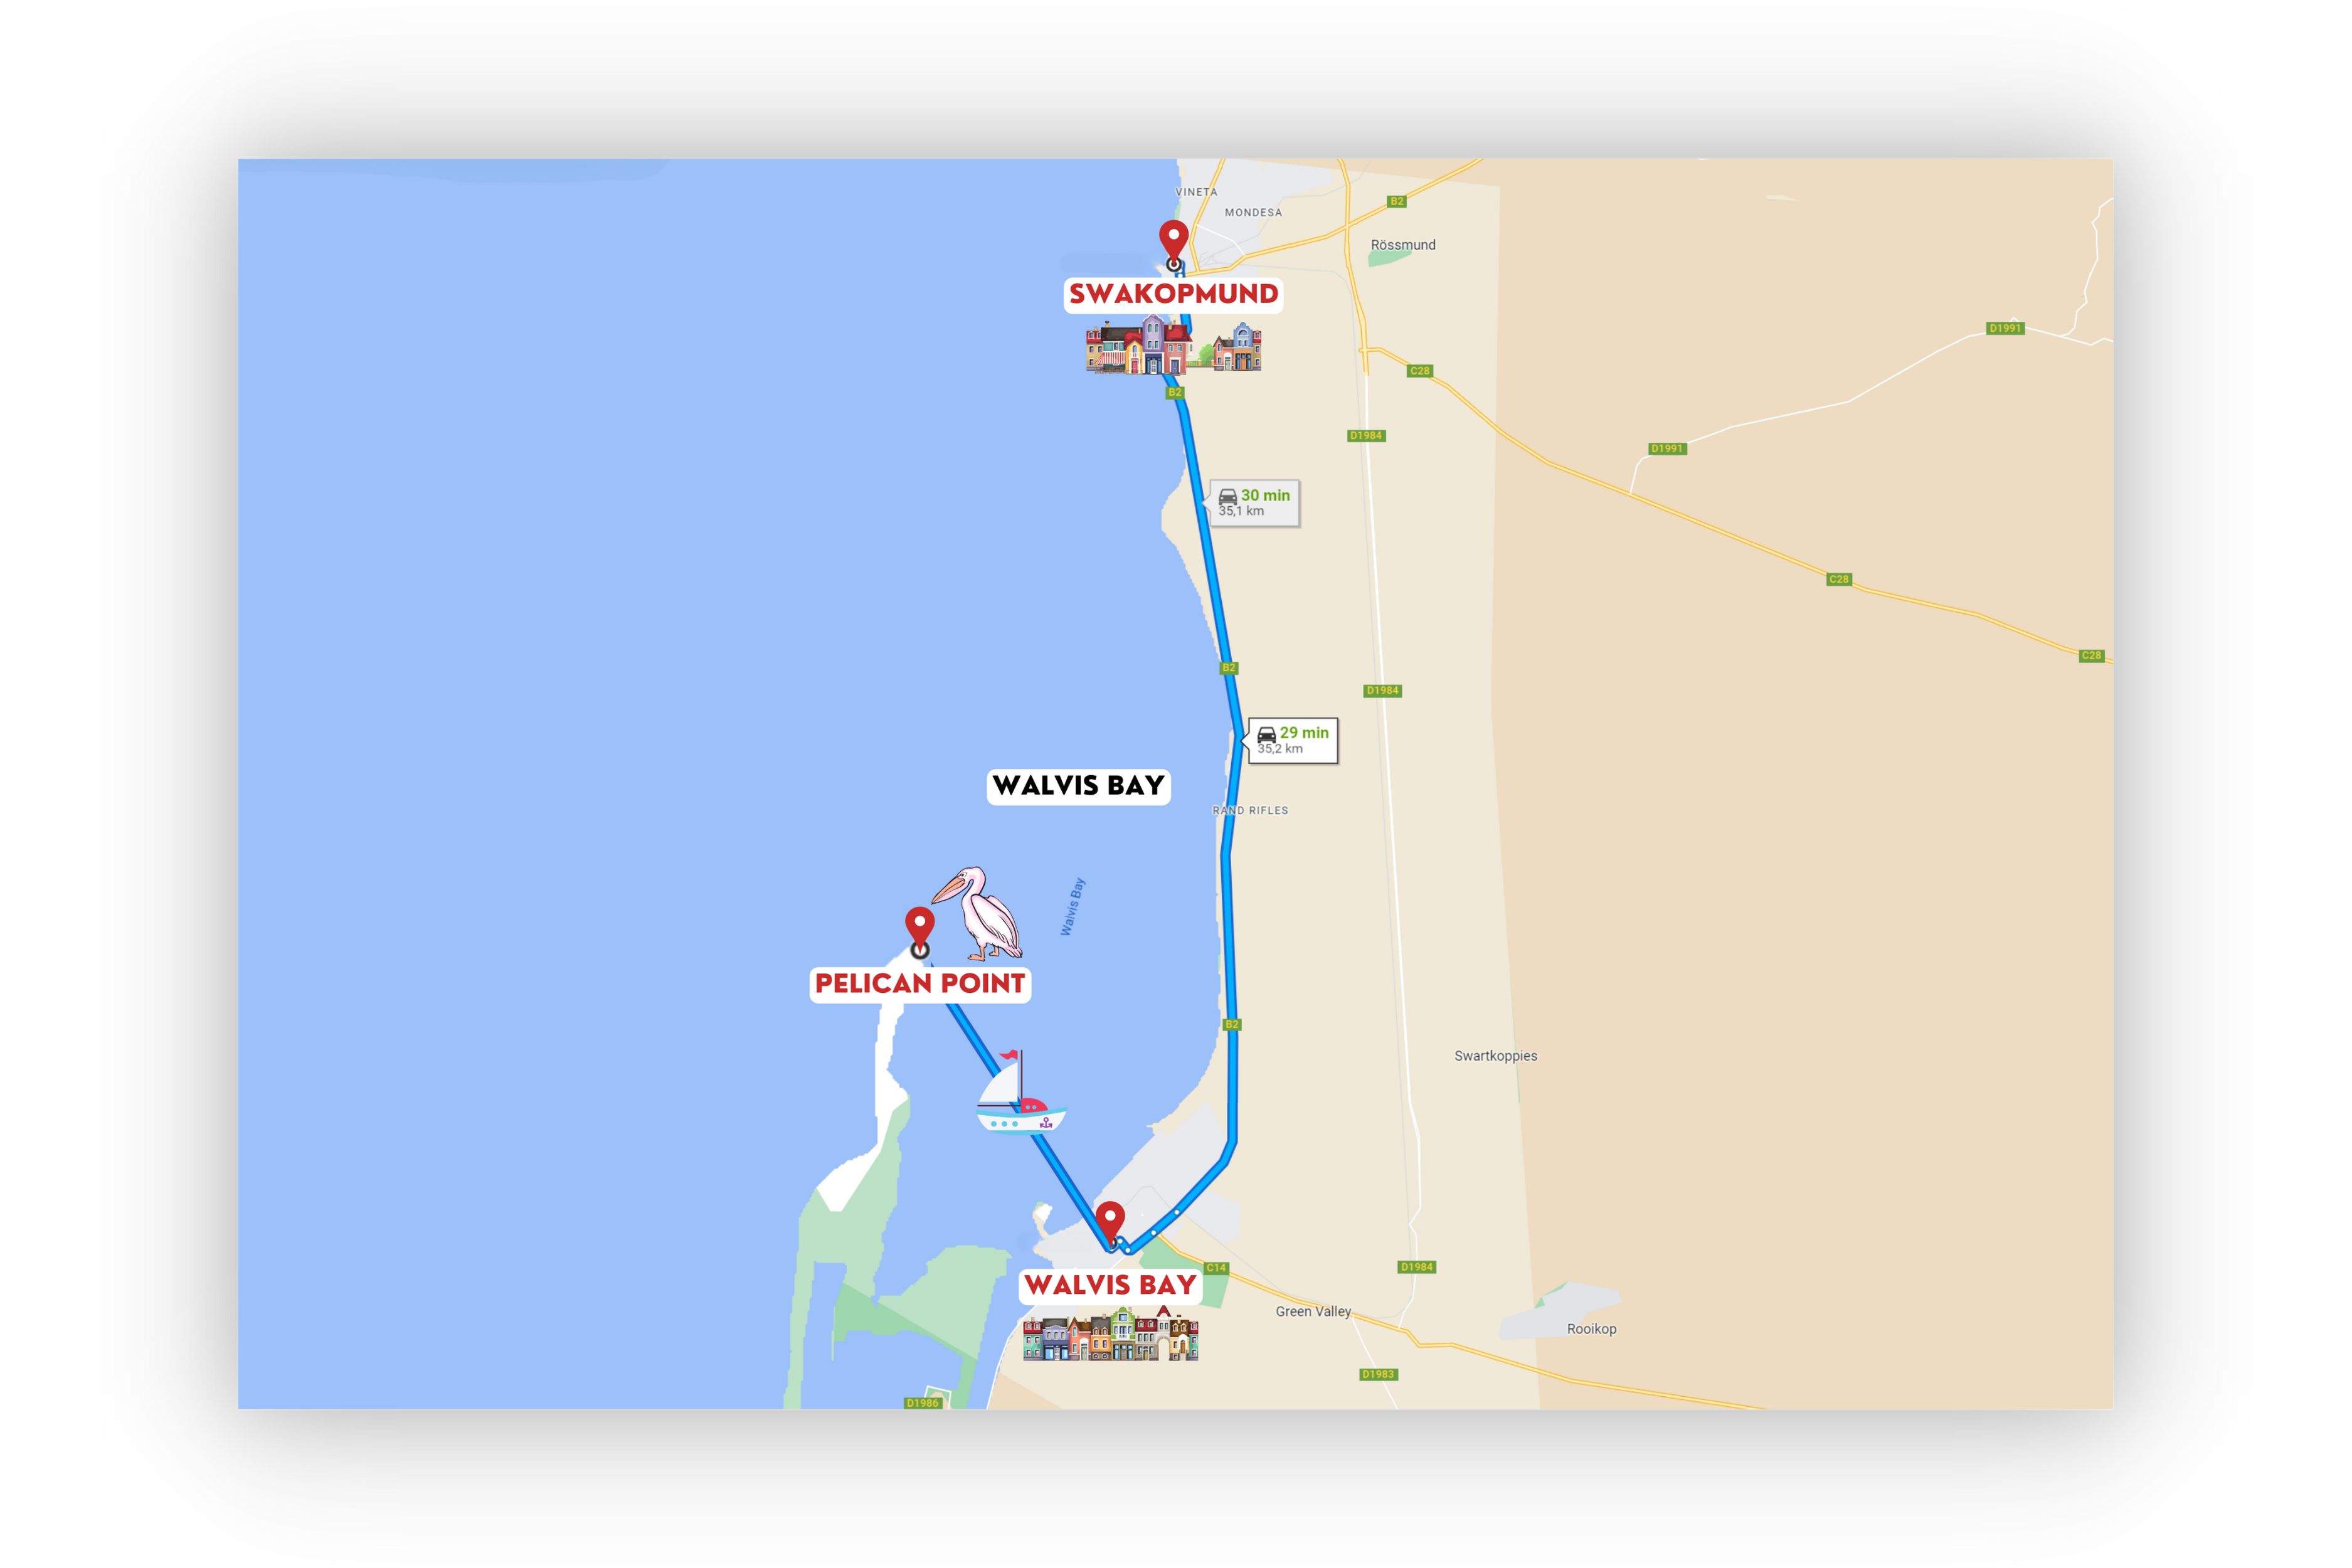 agencia especializada, alojamiento, mapa, Namibia, Pelican Point, qué hacer, que ver, ruta, Sandwich Harbour, Swakopmund, Viaje, viaje solo, Walvis Bay